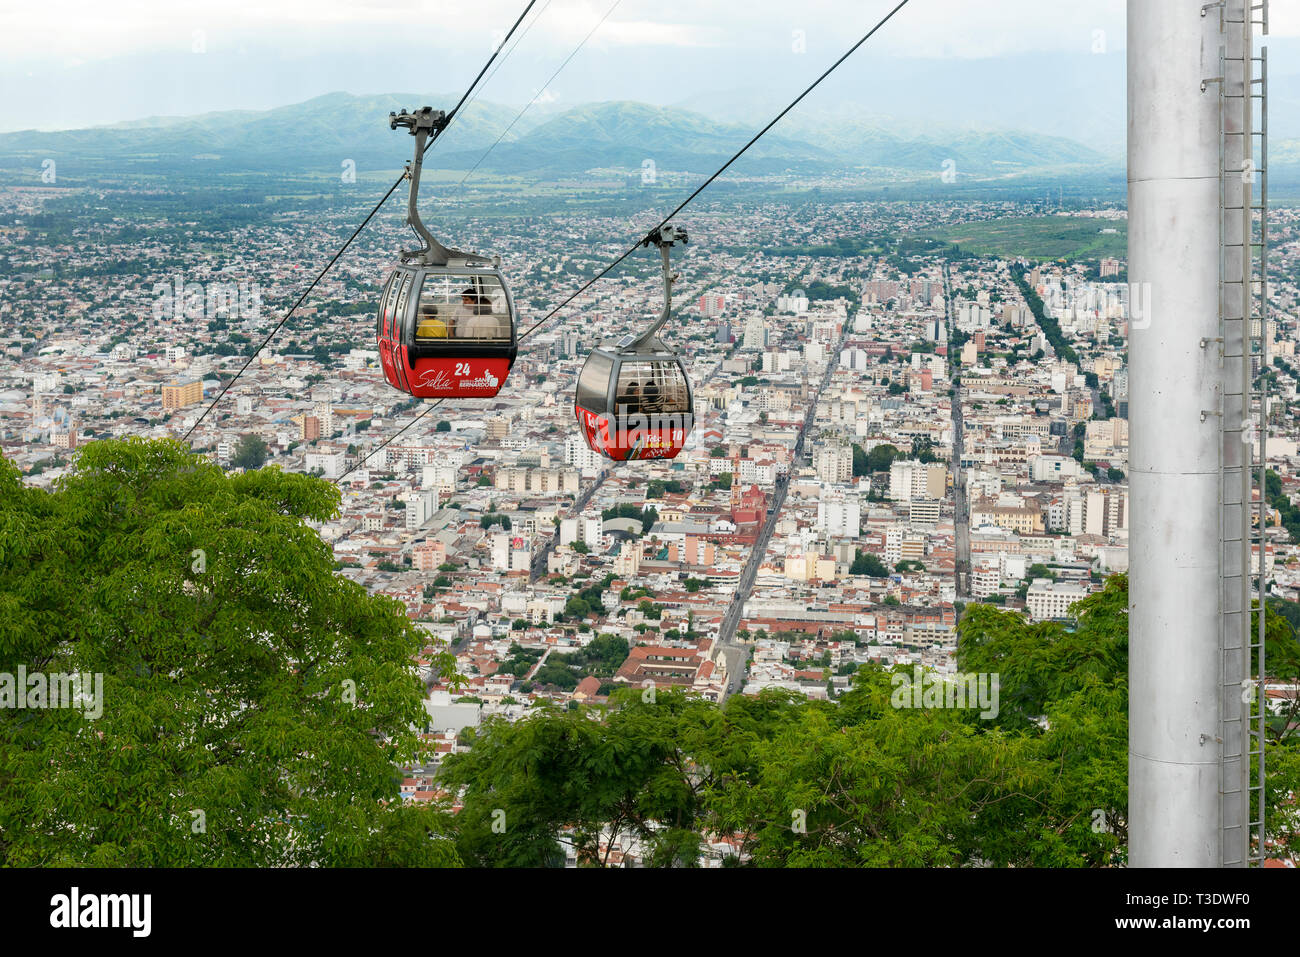 Images de la Salta Tram (Teleferico) téléphériques au-dessus de la ville, du haut de la colline de San Bernardo. Banque D'Images